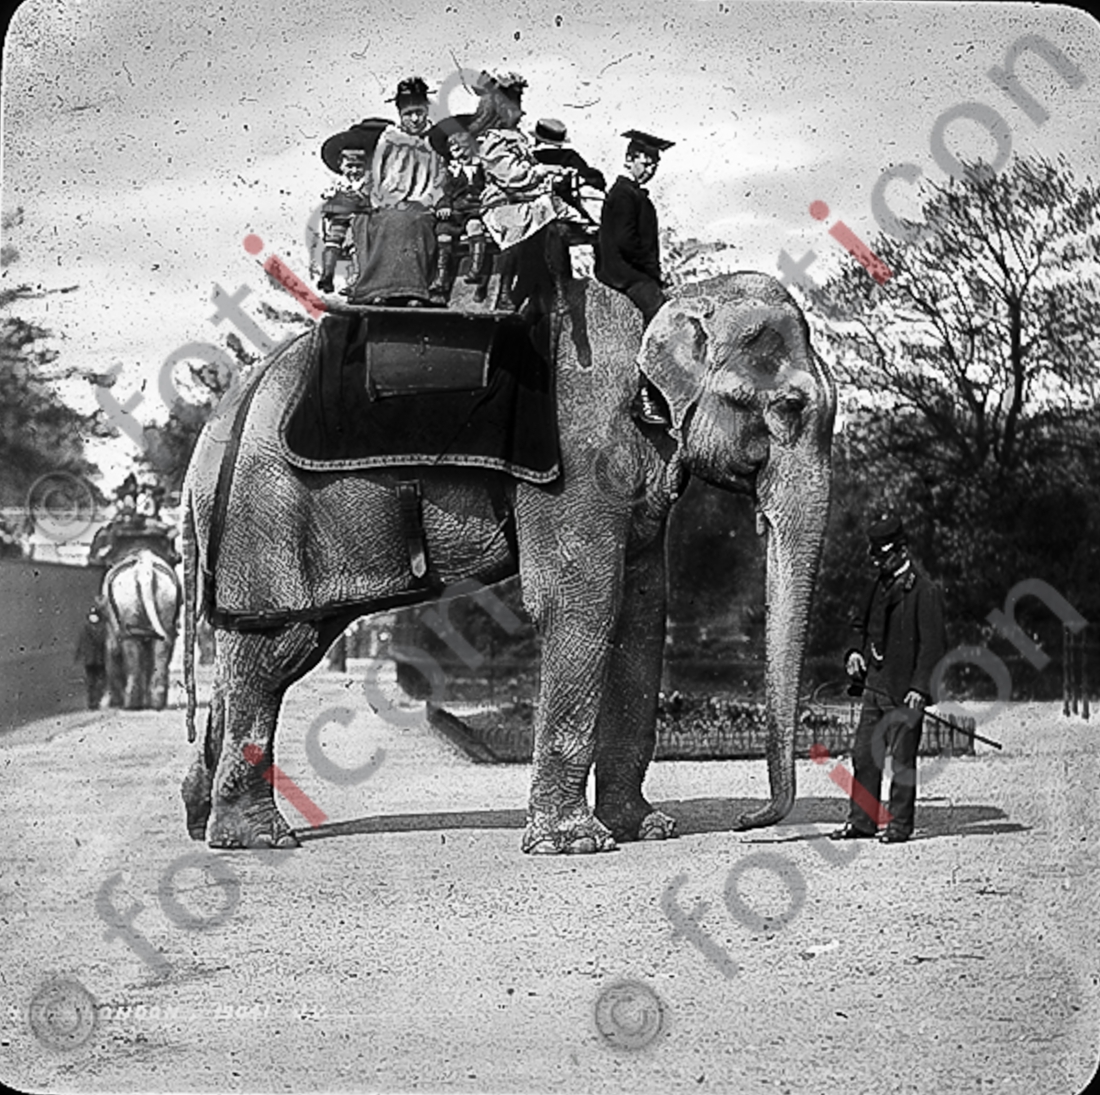 Auf einem Elefanten | On an elephant - Foto foticon-simon-167-016-sw.jpg | foticon.de - Bilddatenbank für Motive aus Geschichte und Kultur